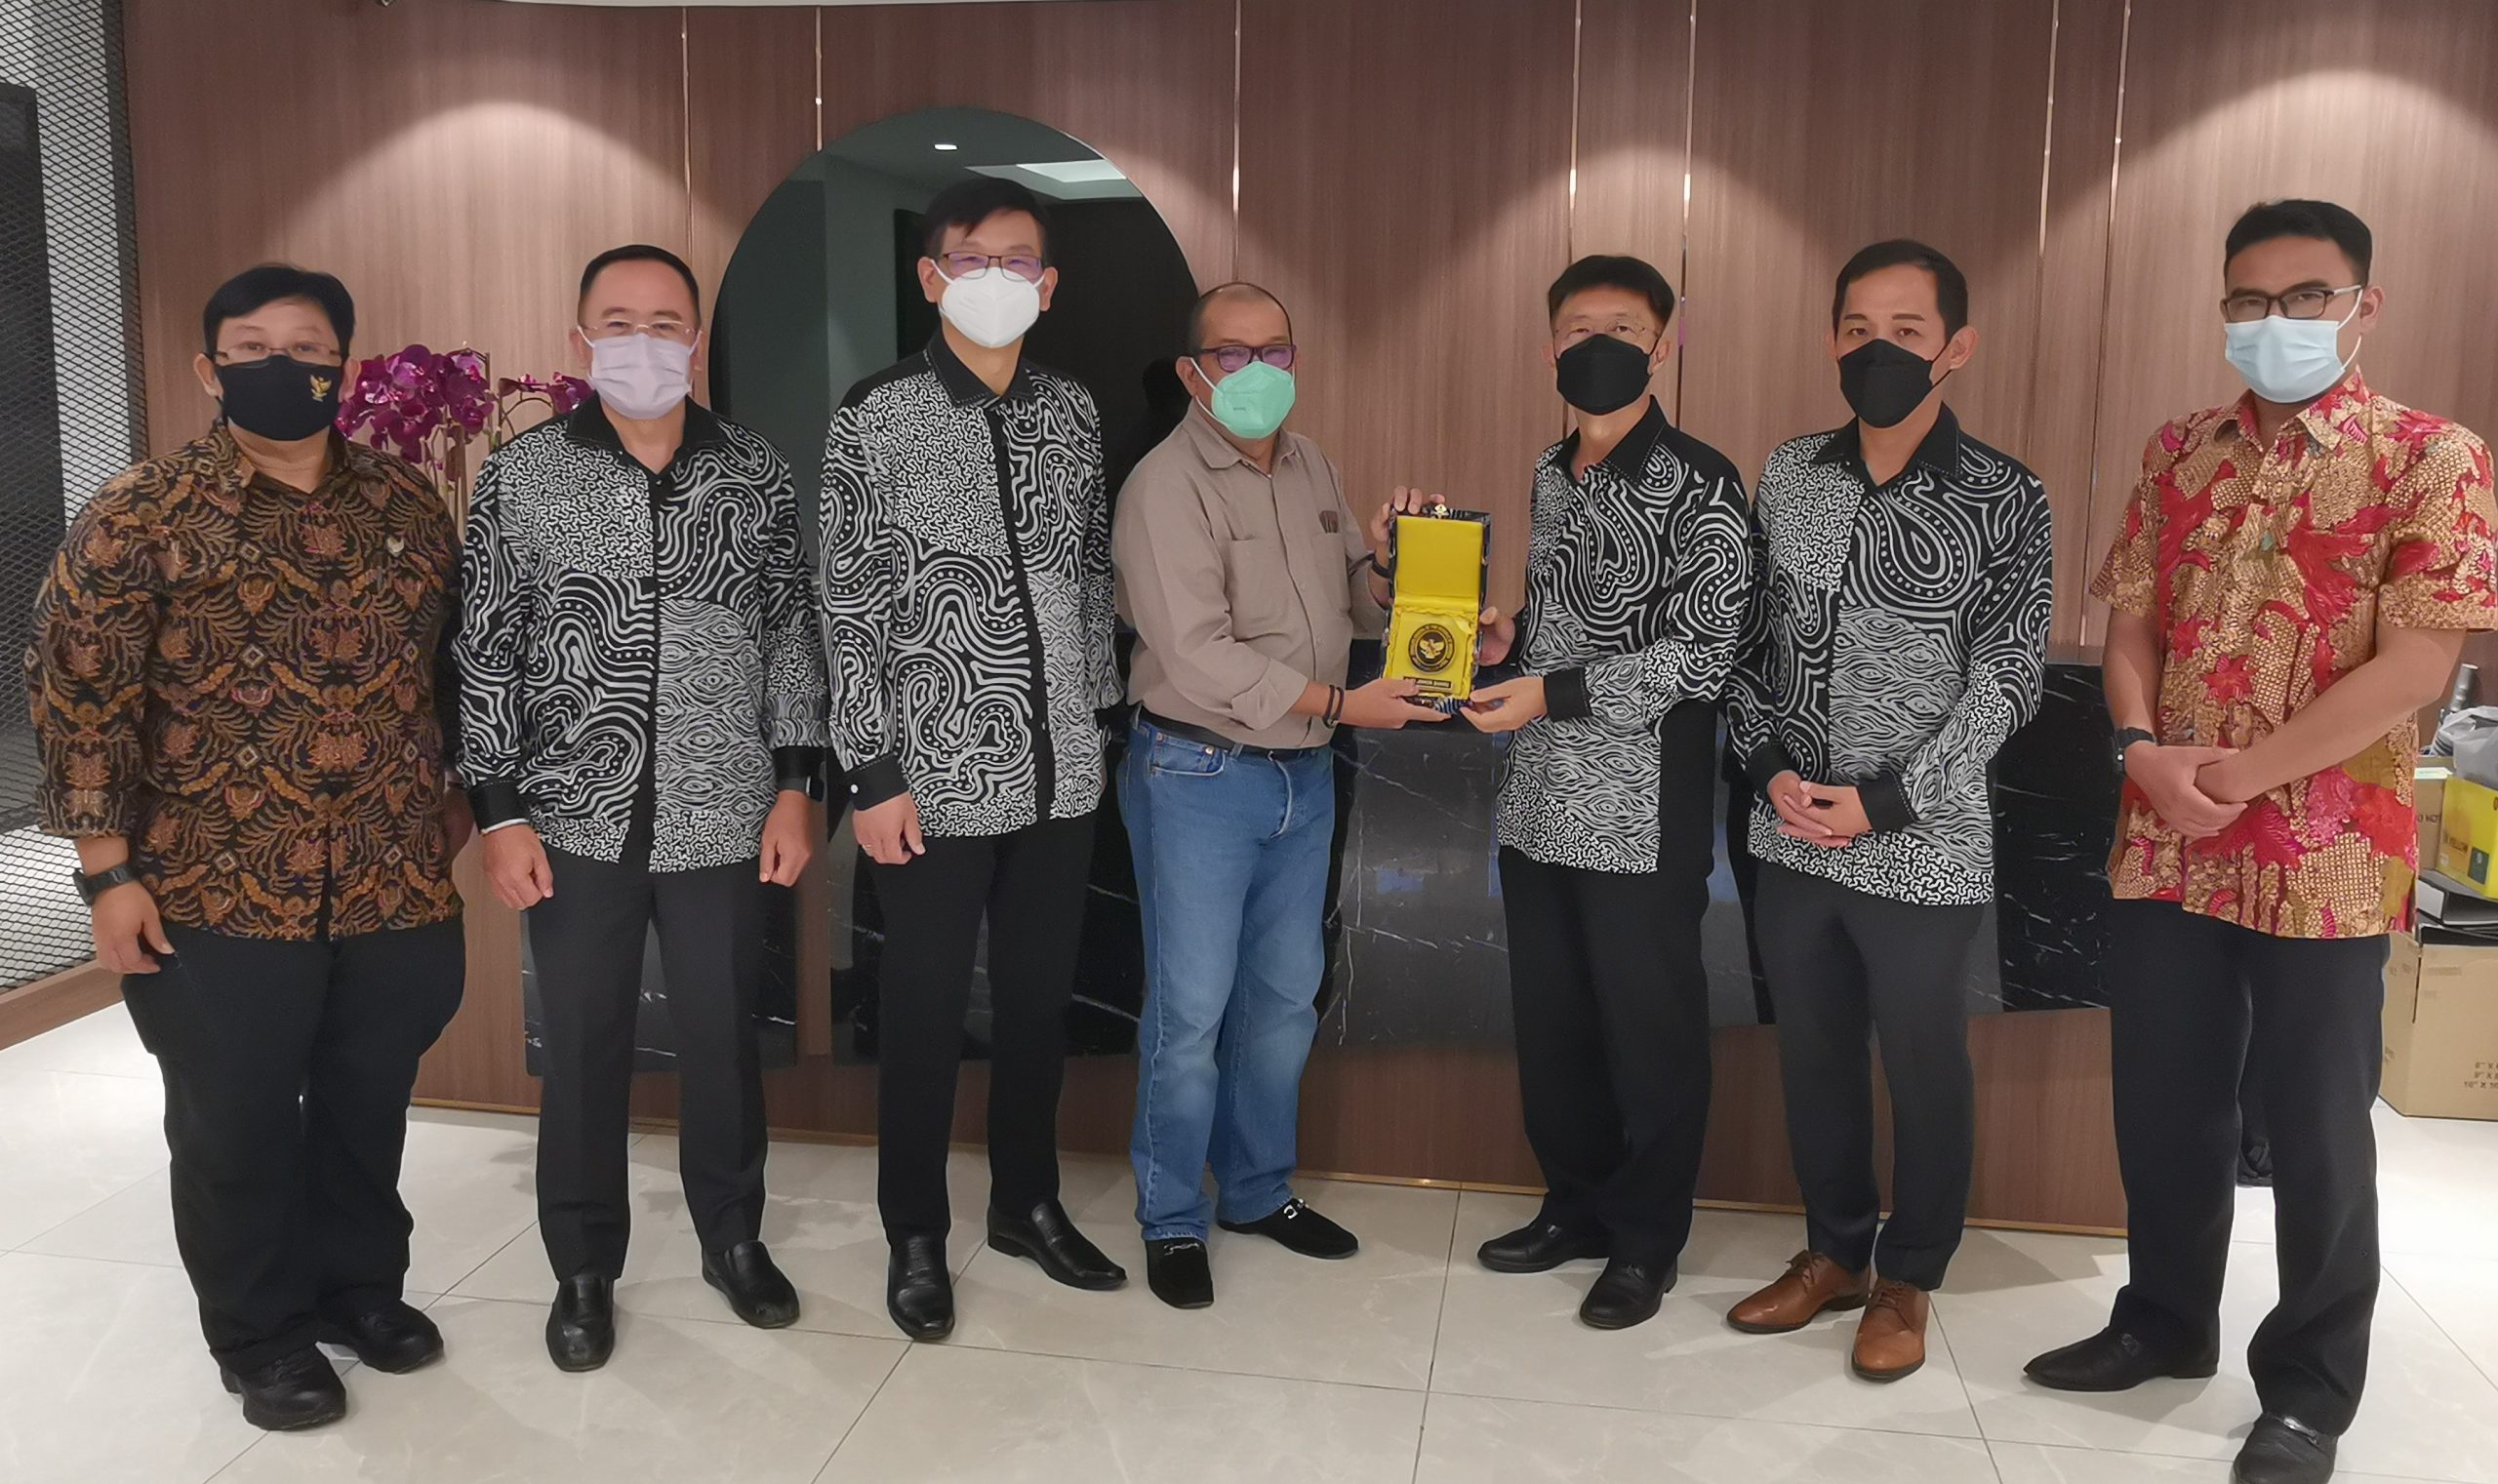 印尼驻新山领事馆经济事务参赞与两位官员拜访马六甲中华总商会。